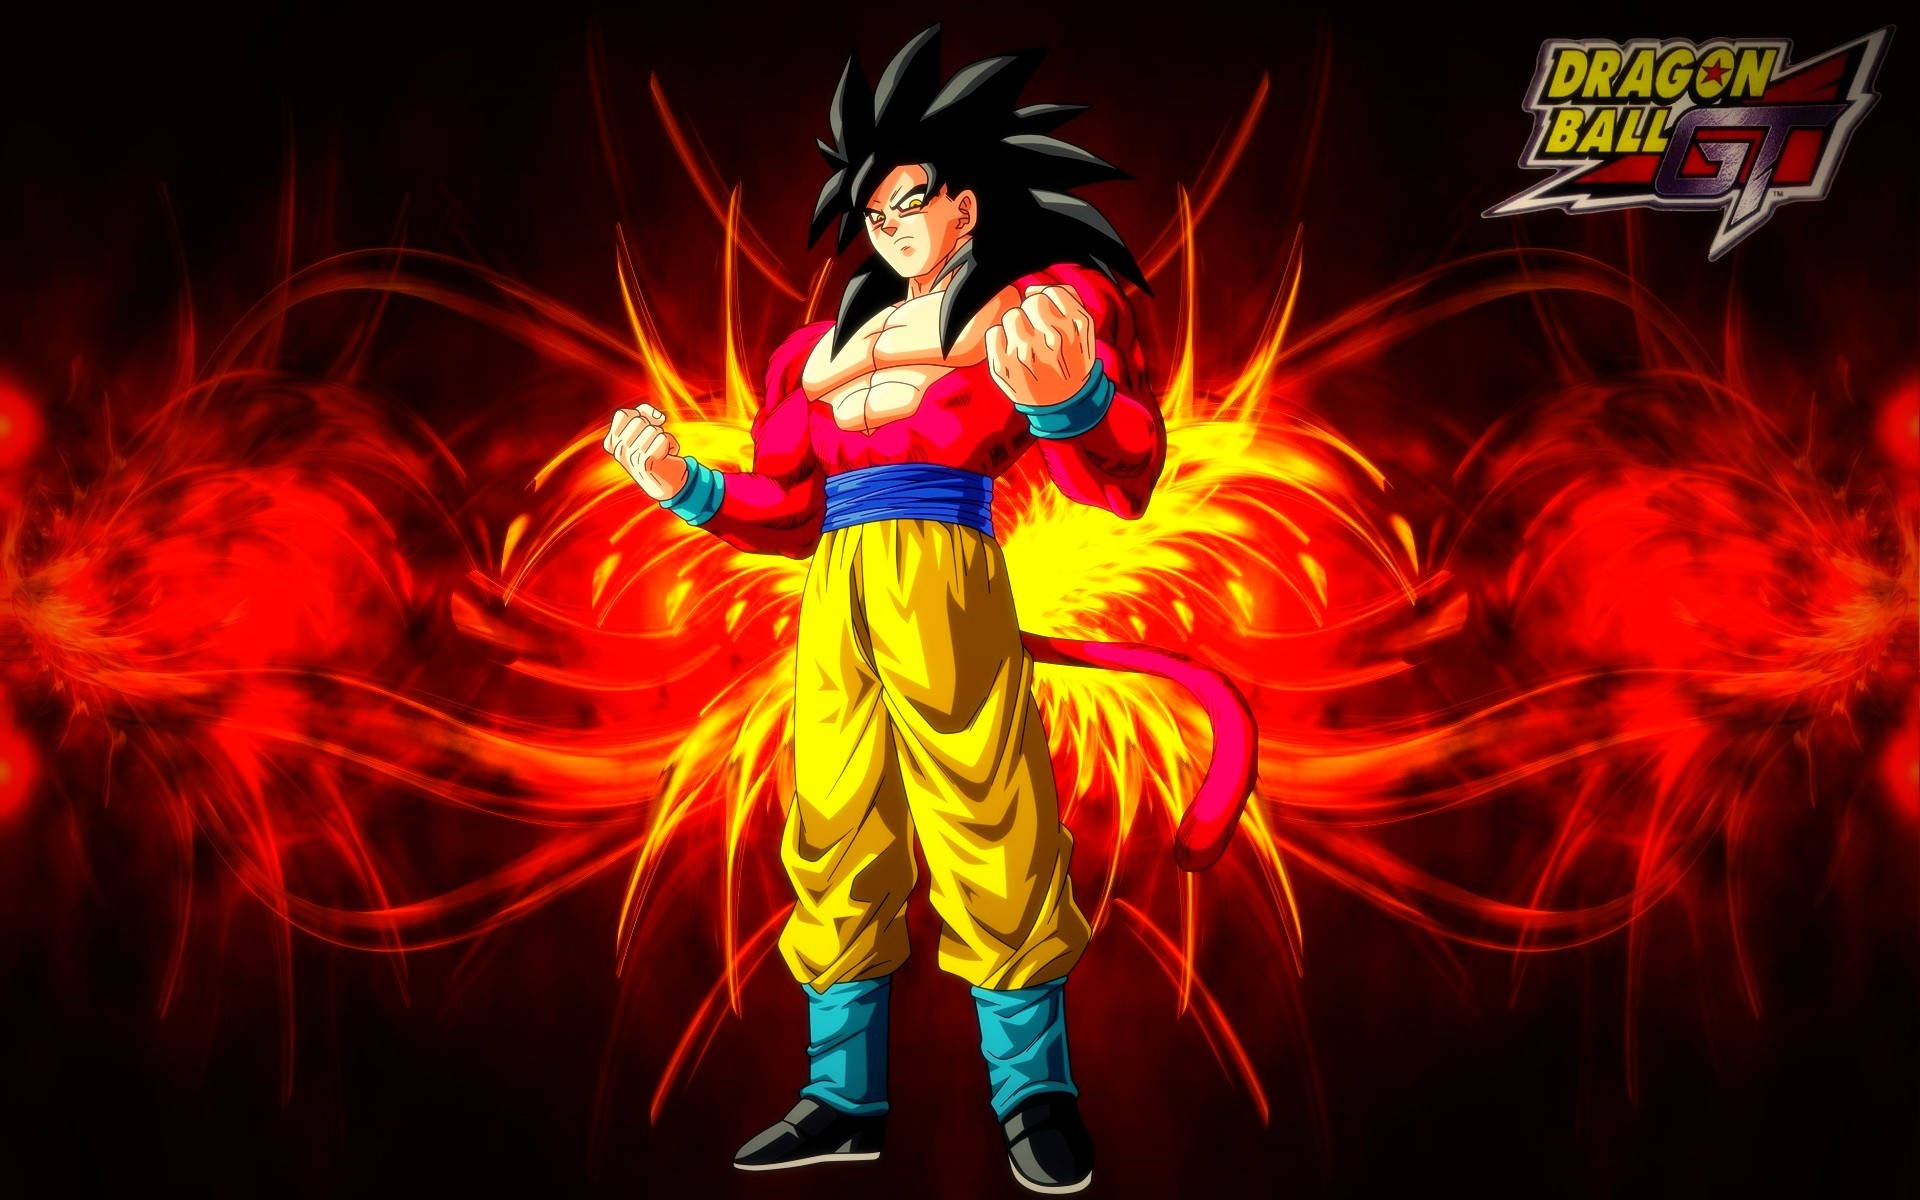 Black Goku Displaying Intense Power